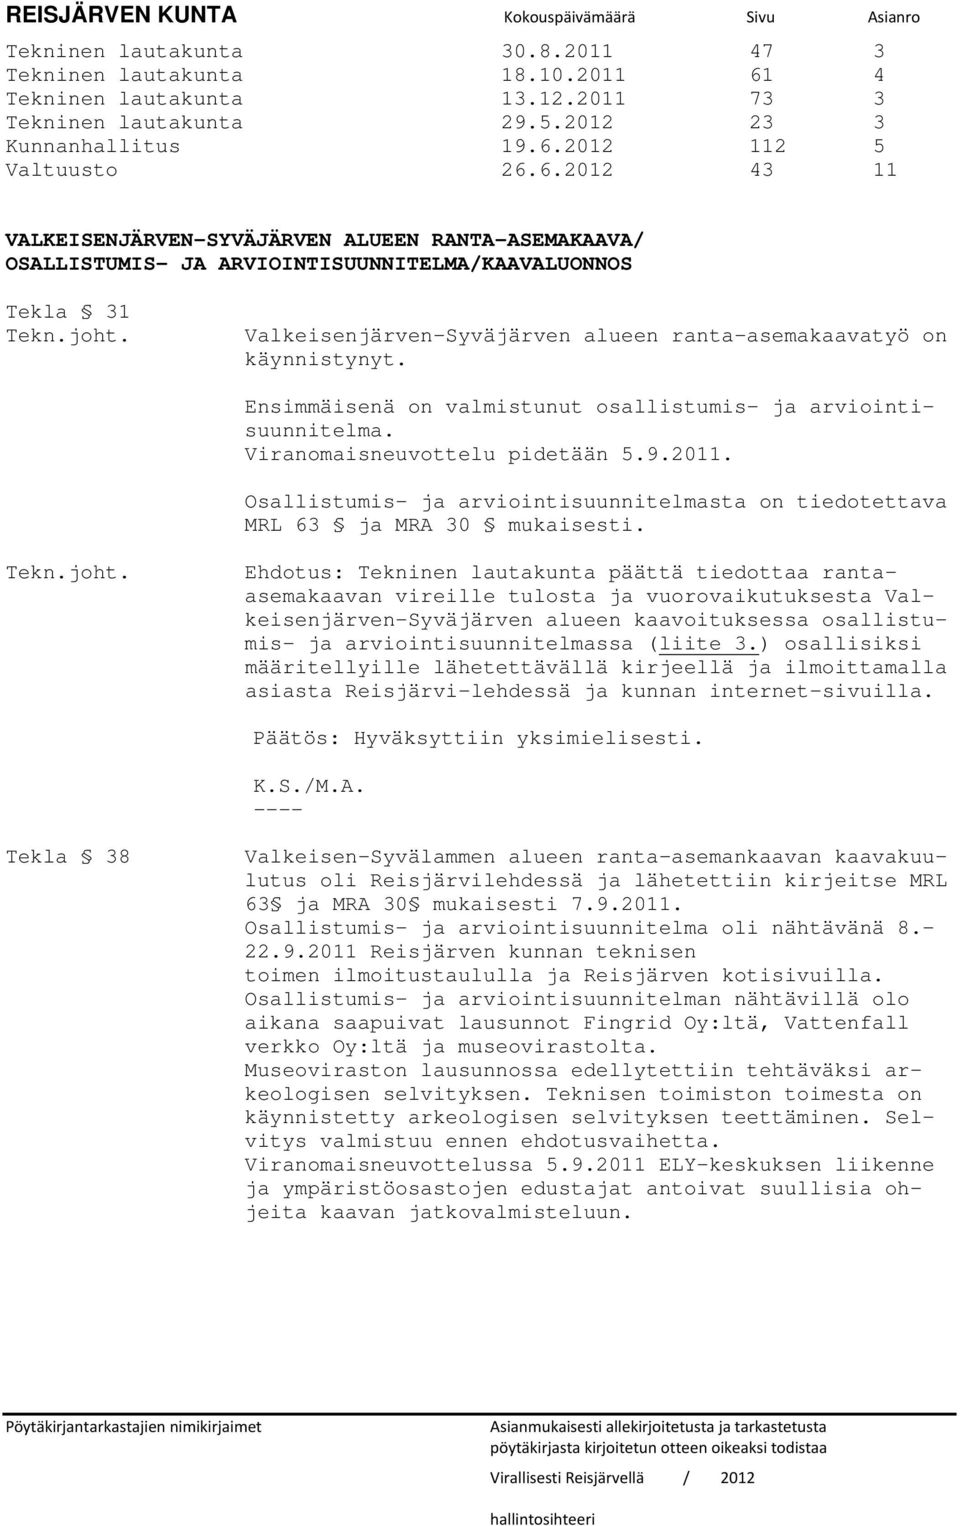 Valkeisenjärven-Syväjärven alueen ranta-asemakaavatyö on käynnistynyt. Ensimmäisenä on valmistunut osallistumis- ja arviointisuunnitelma. Viranomaisneuvottelu pidetään 5.9.2011.